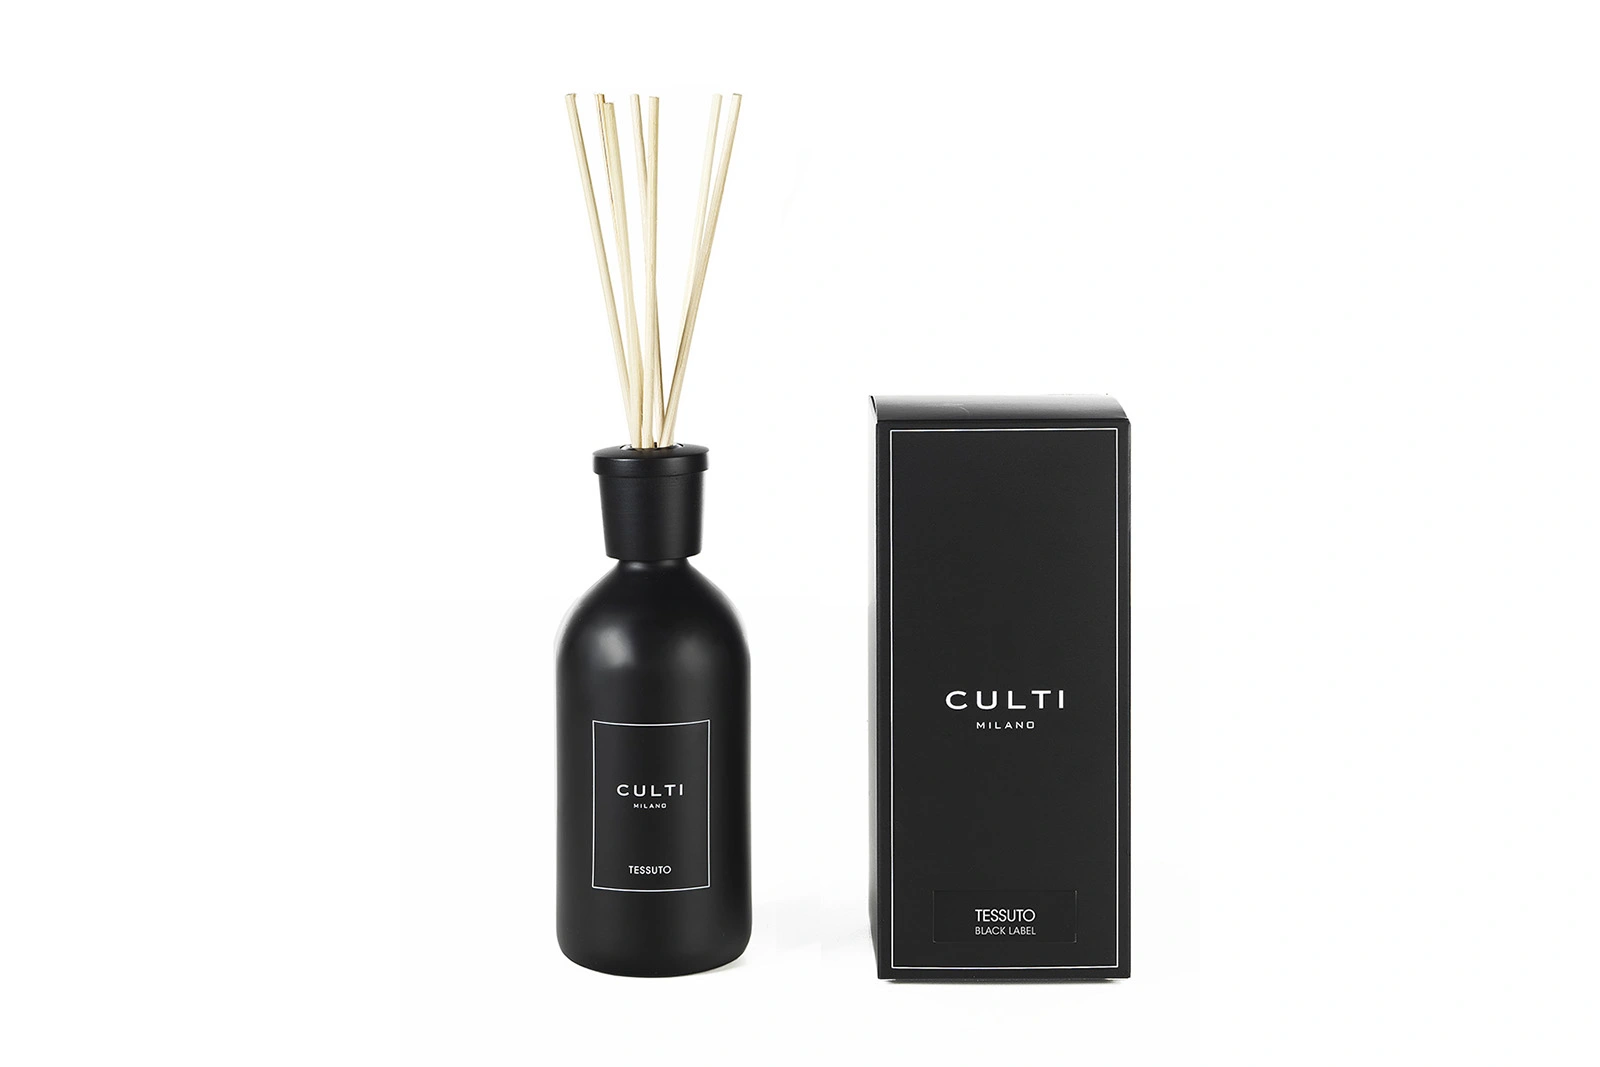 Culti Milano Tessuto | Diffuser Stile Black Label 500 ml